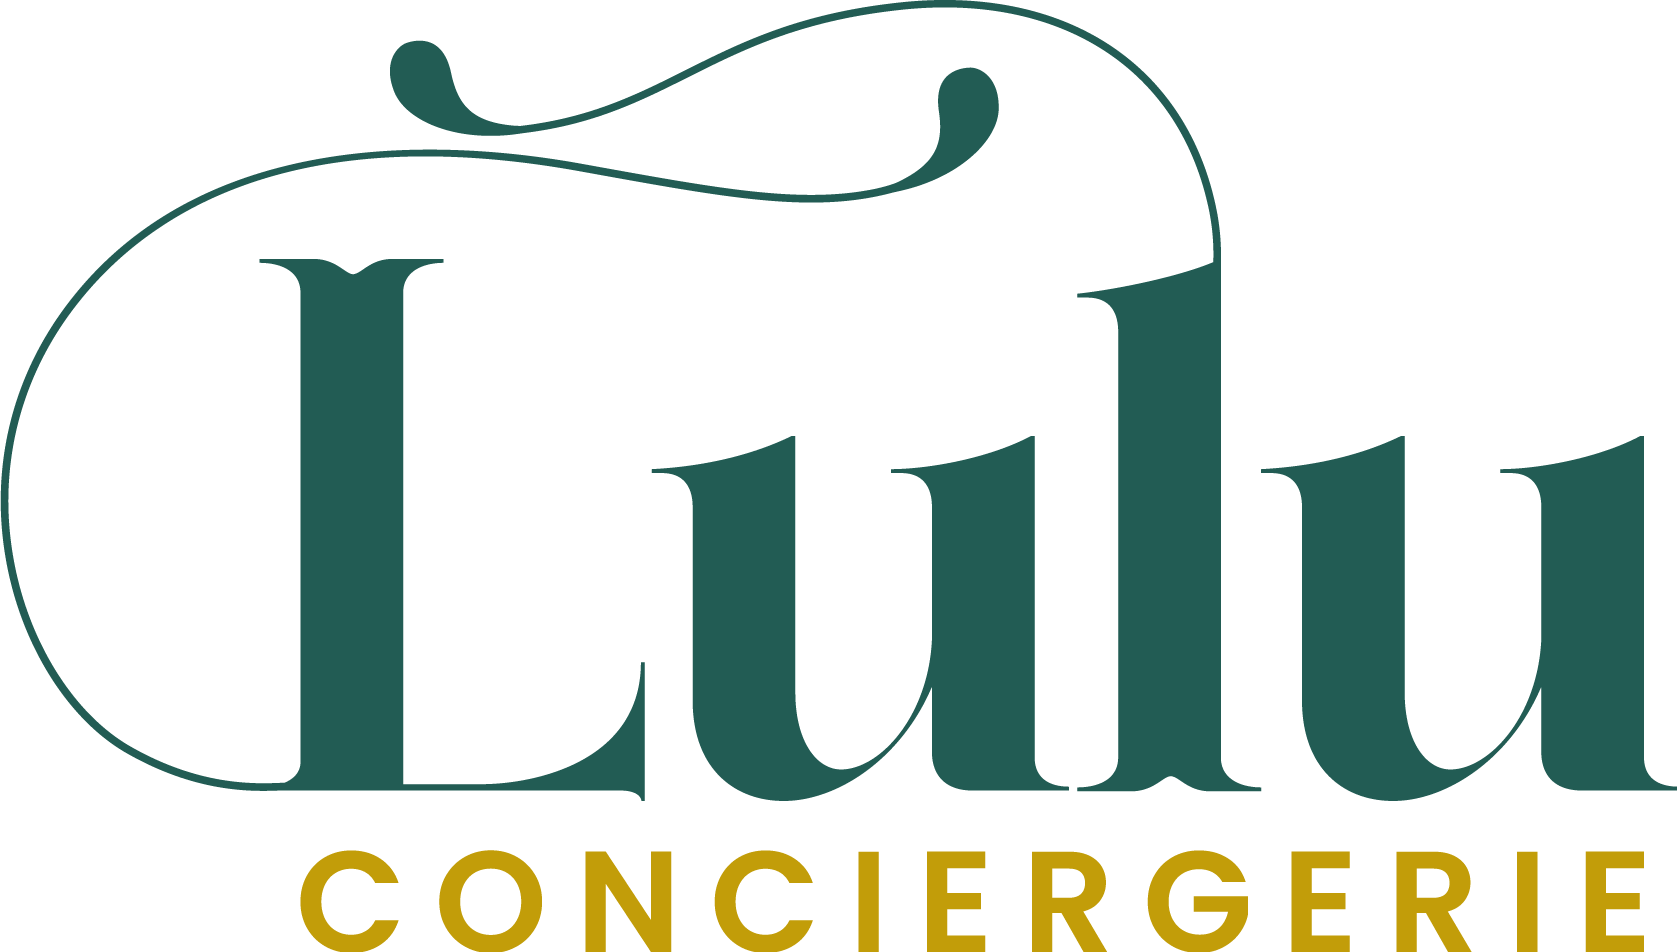 Lulu Conciergerie